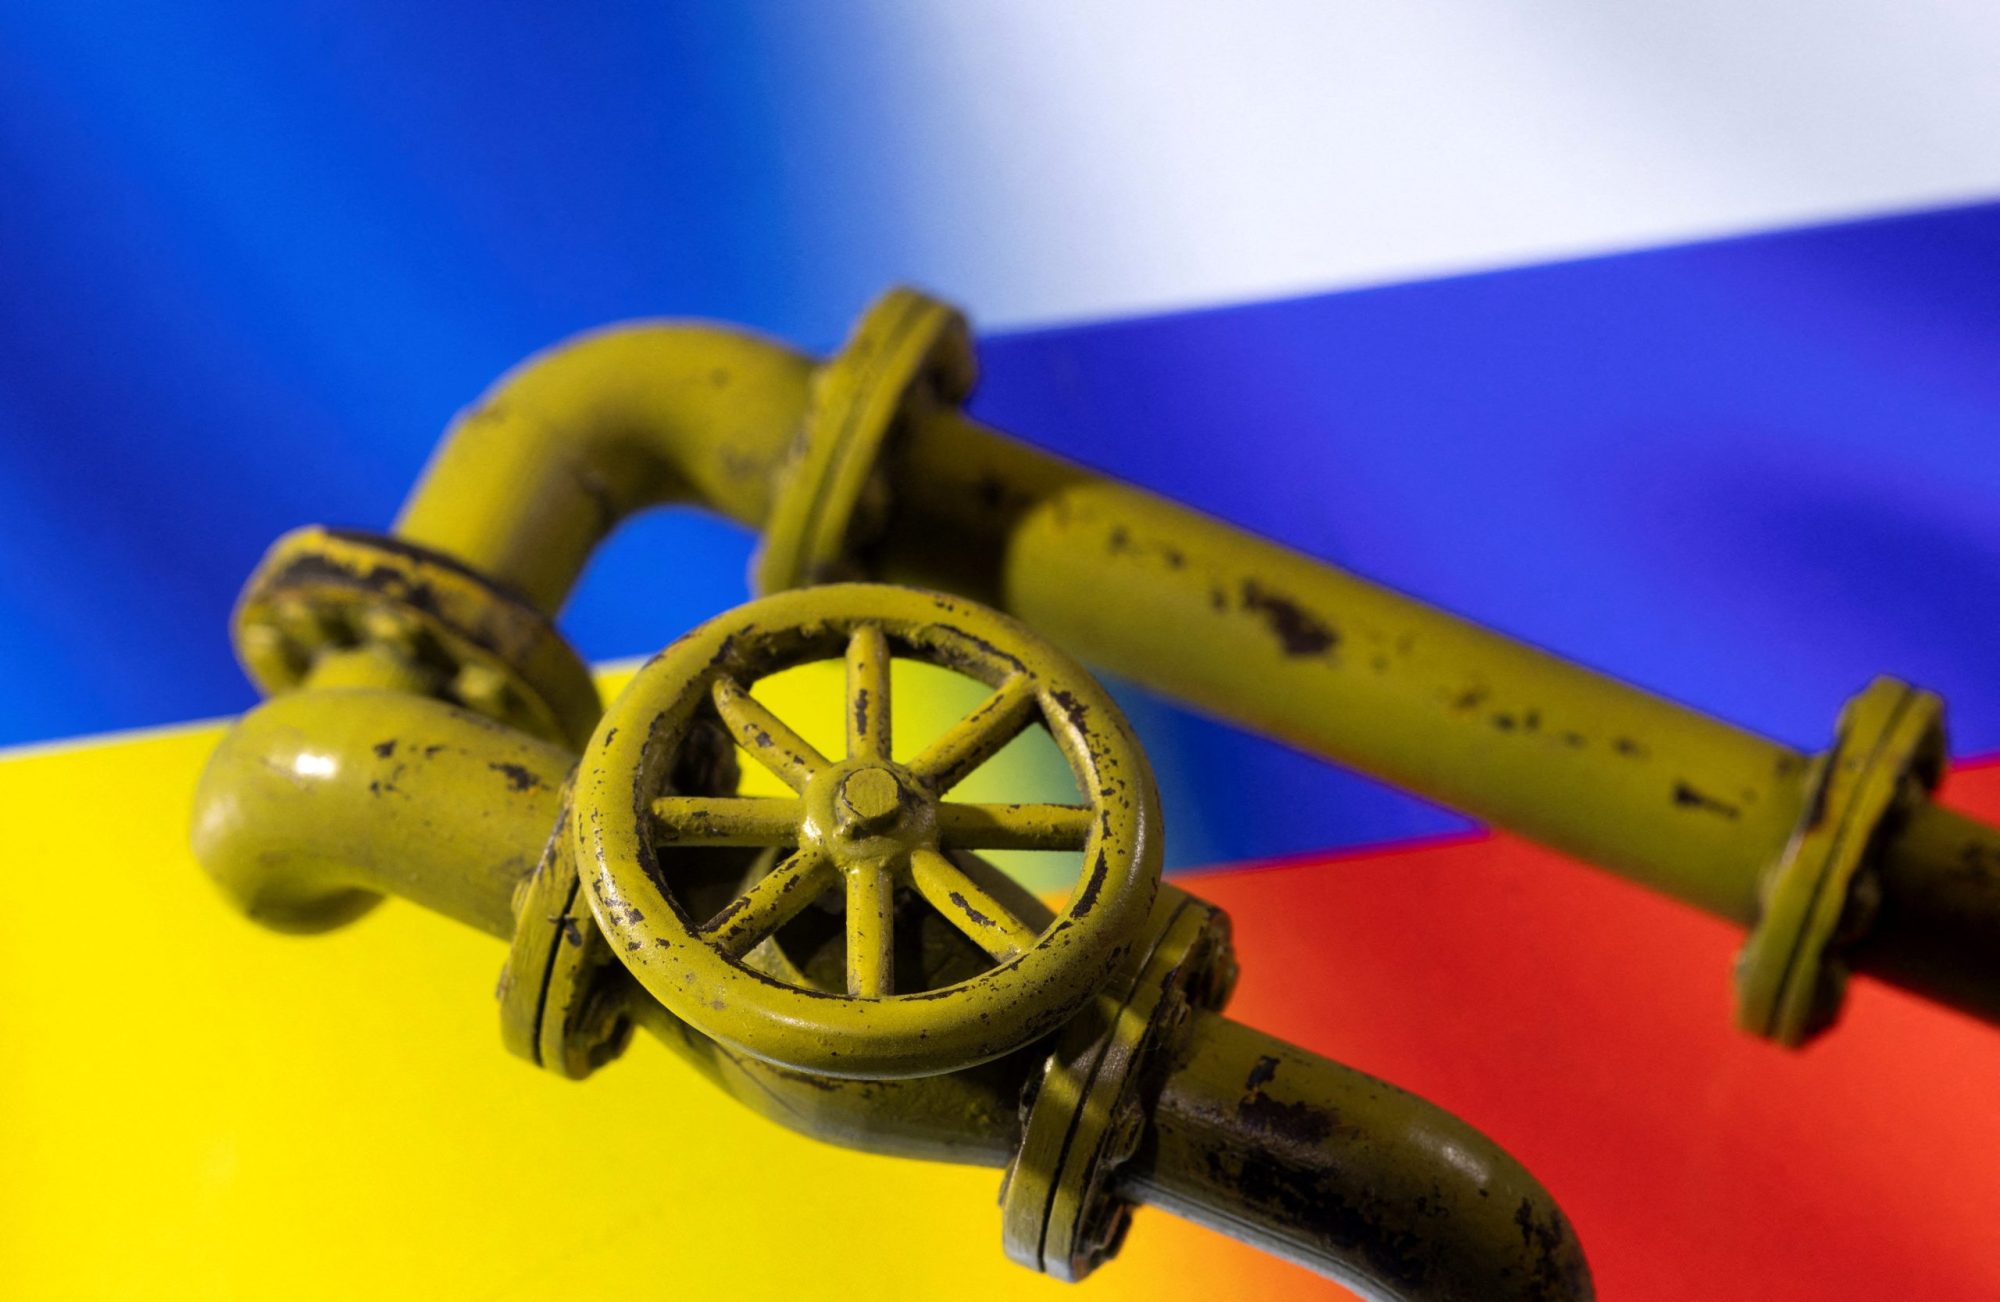 Λόγω "ανωτέρας βίας" η Ουκρανία θα διακόψει τη μεταφορά ρωσικού φυσικού αερίου προς την Ευρώπη